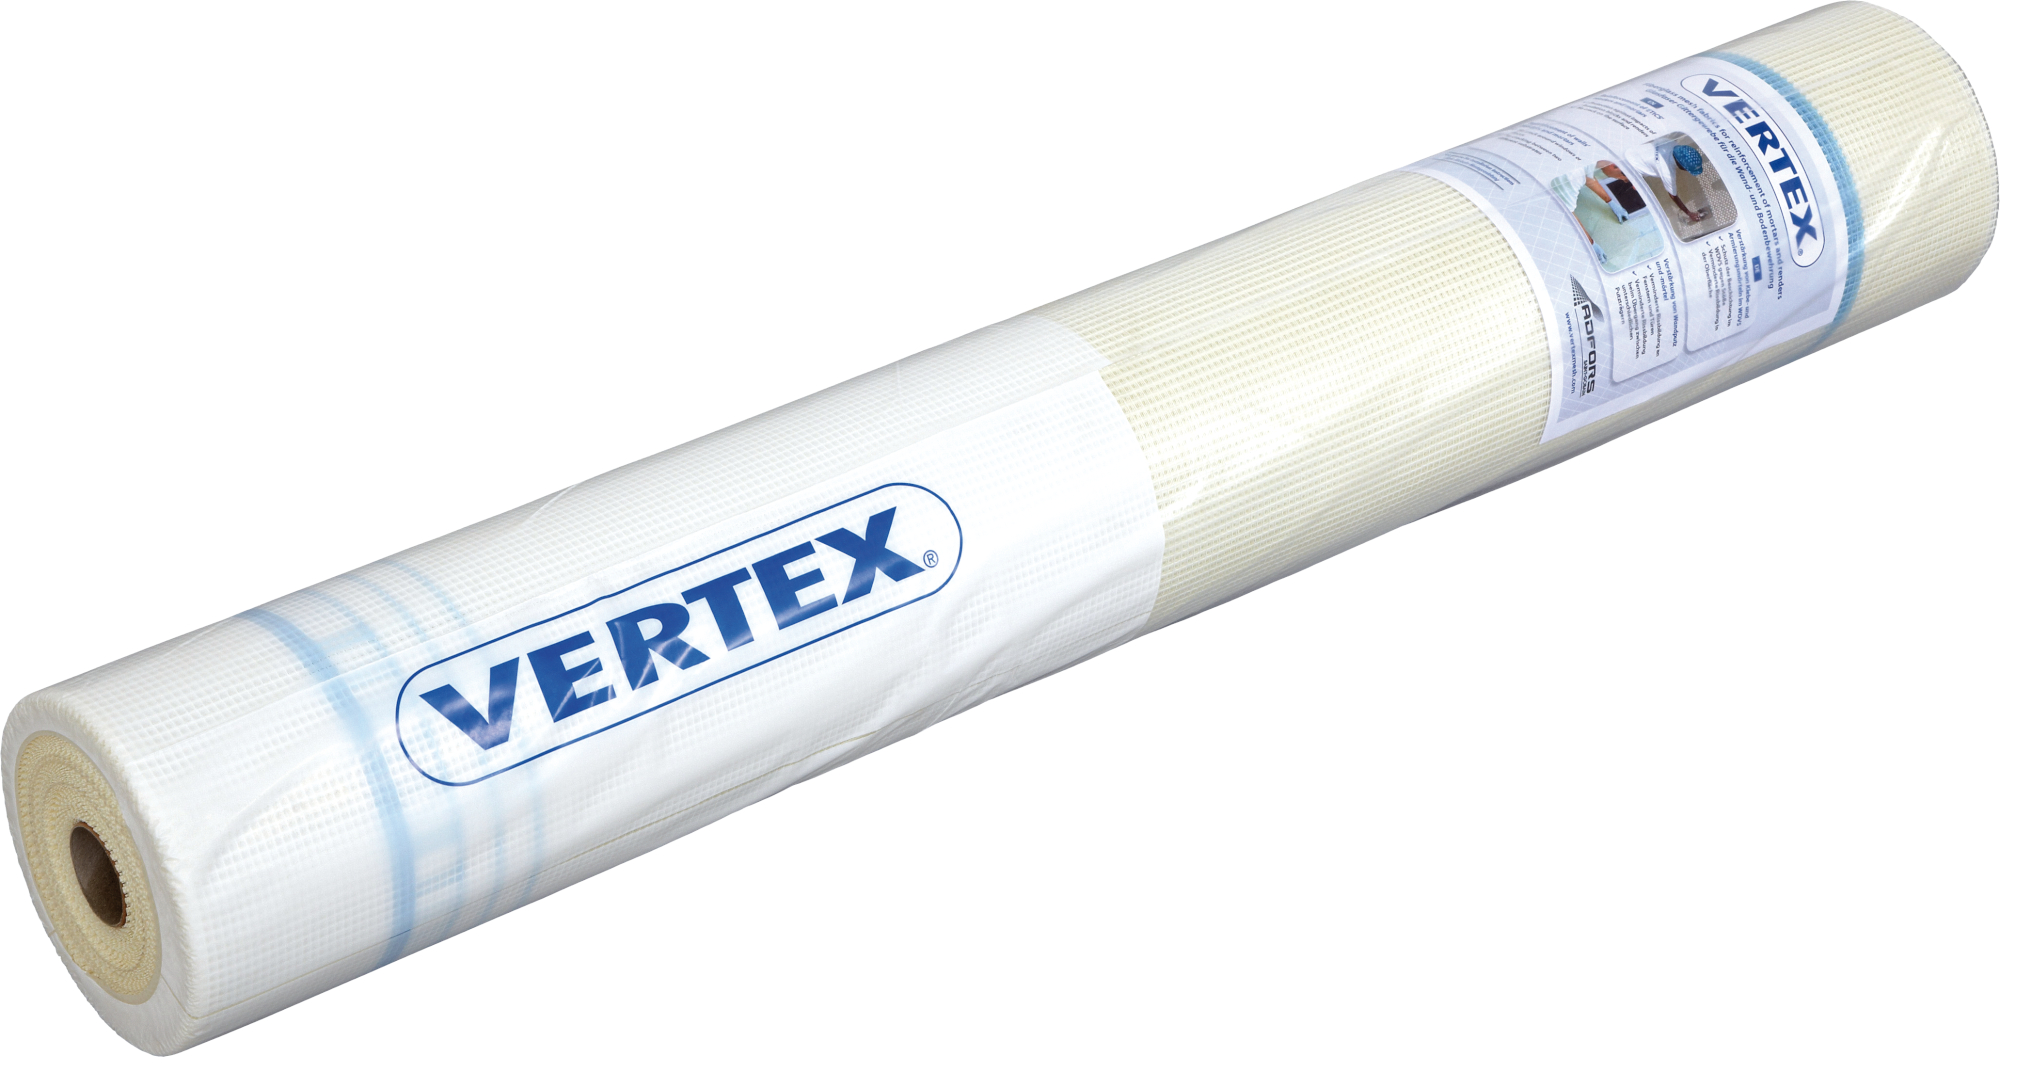 Tkanina výztužná Vertex R131 160 g/m2 (55 m2/role) Vertex